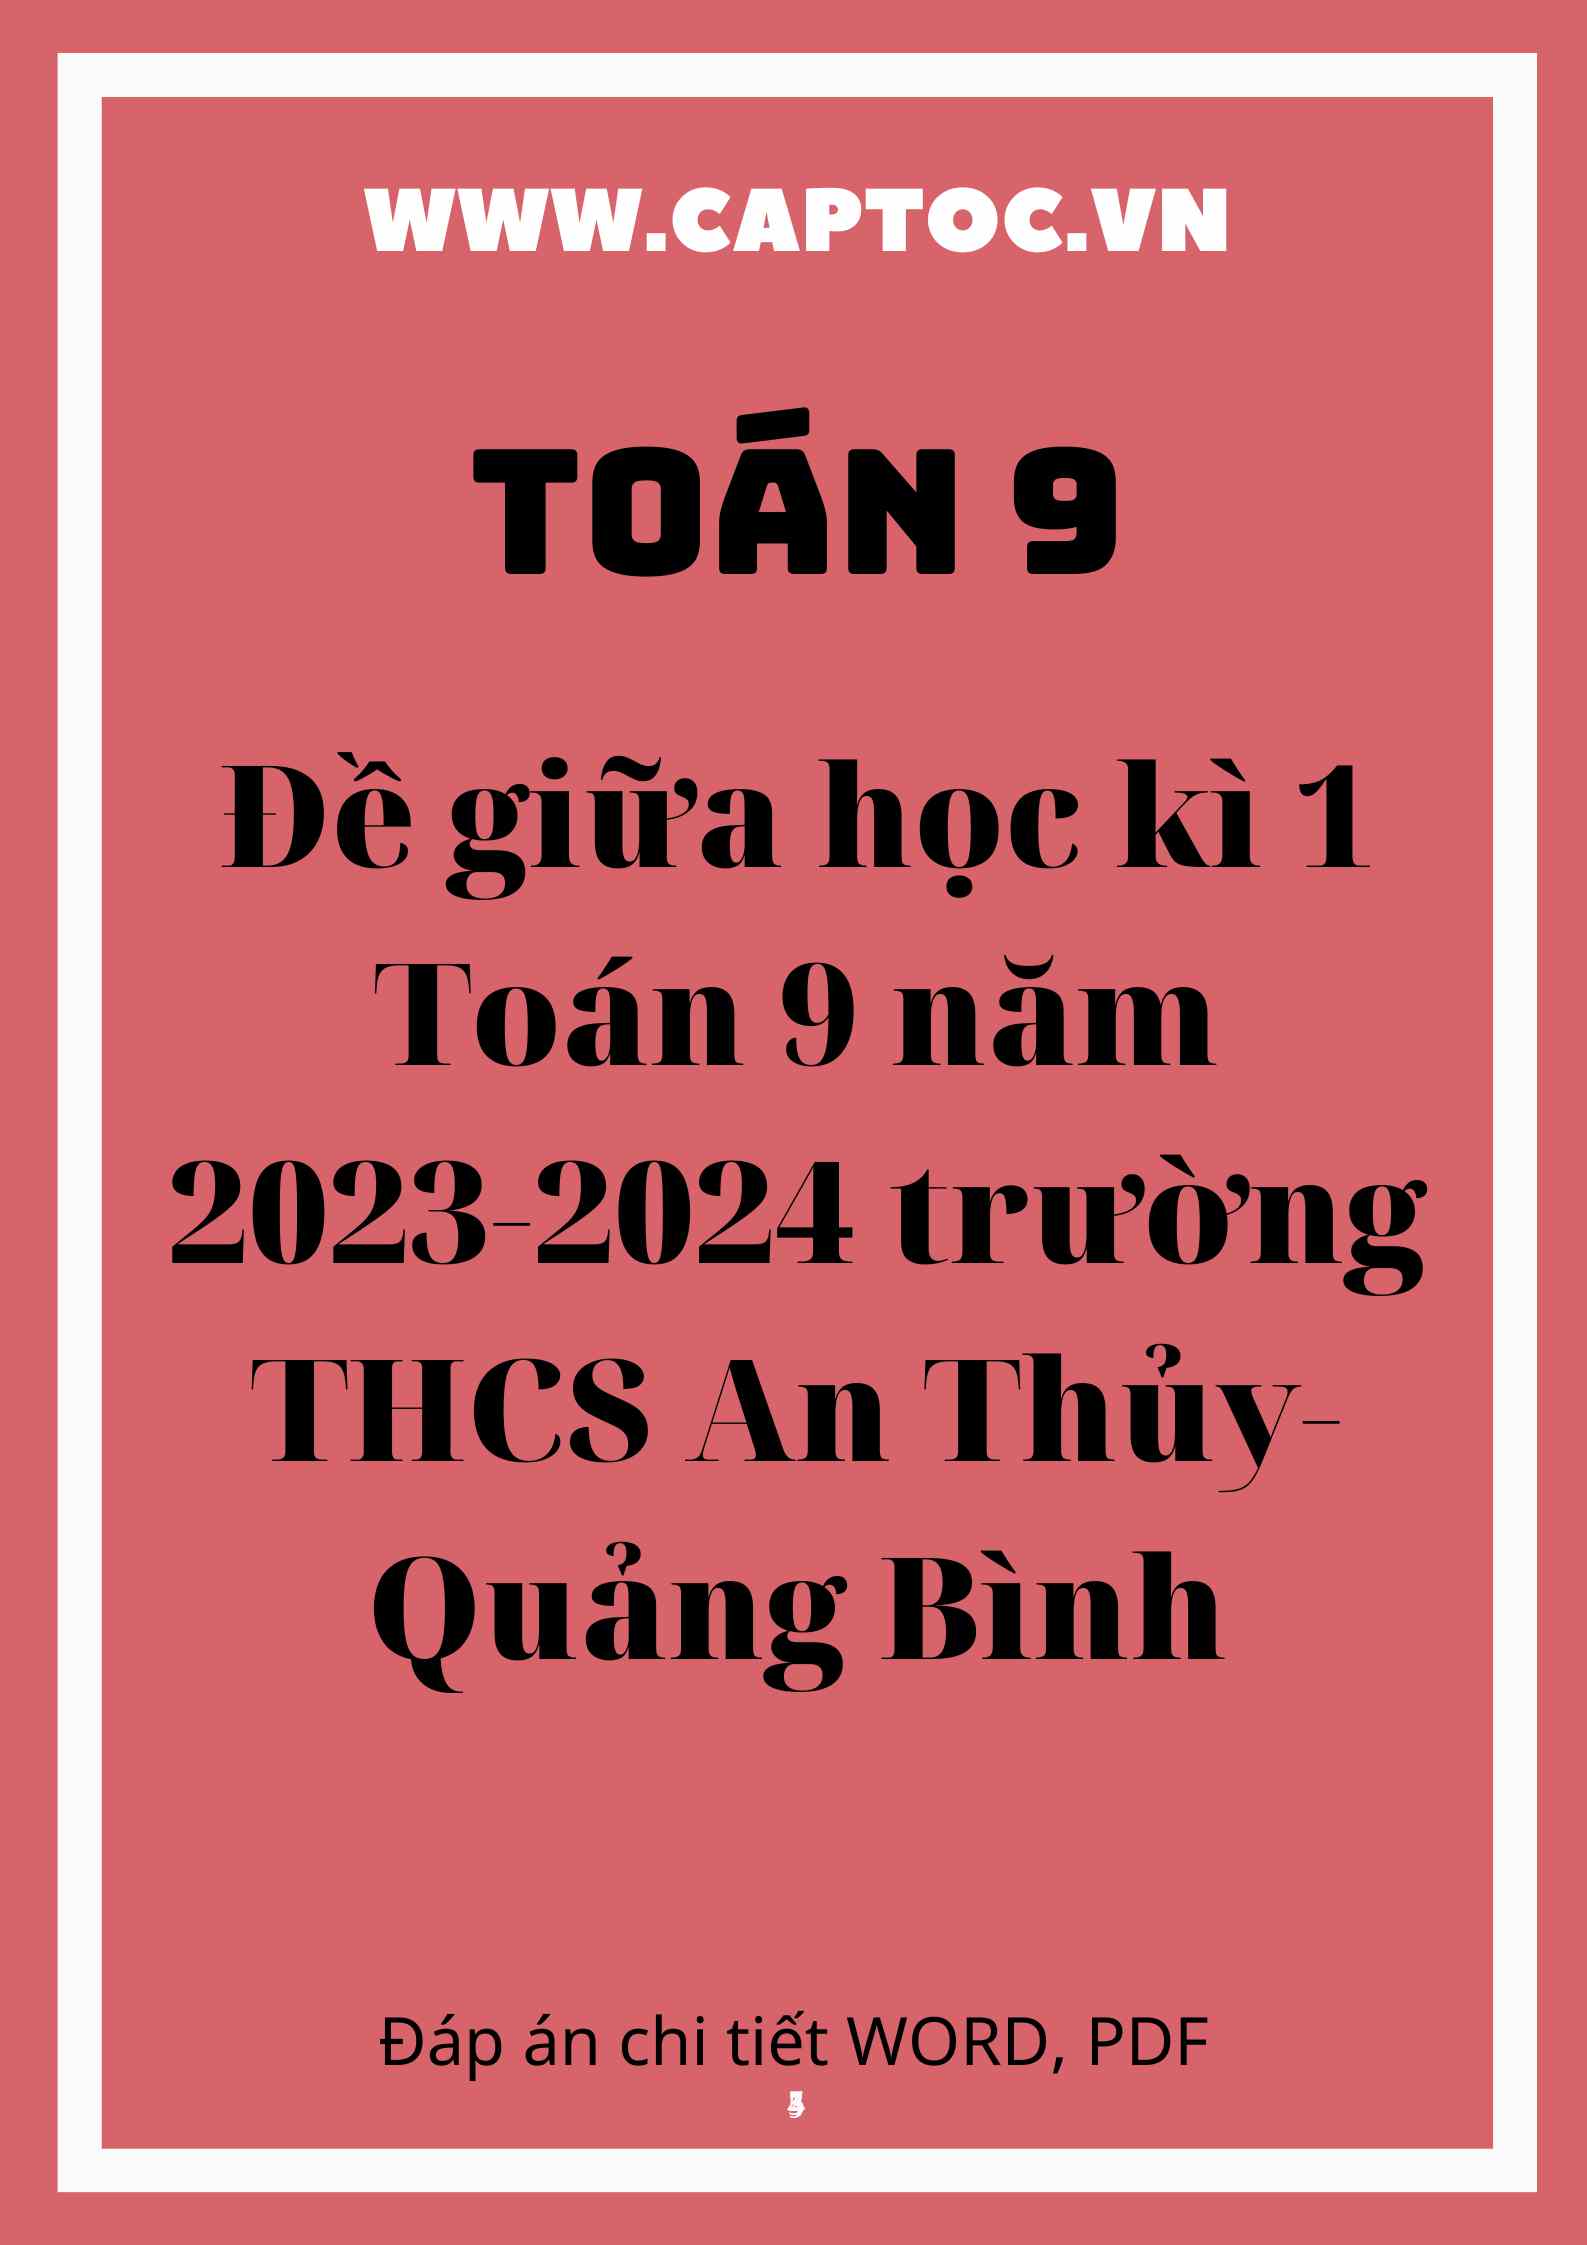 Đề giữa học kì 1 Toán 9 năm 2023-2024 trường THCS An Thủy-Quảng Bình